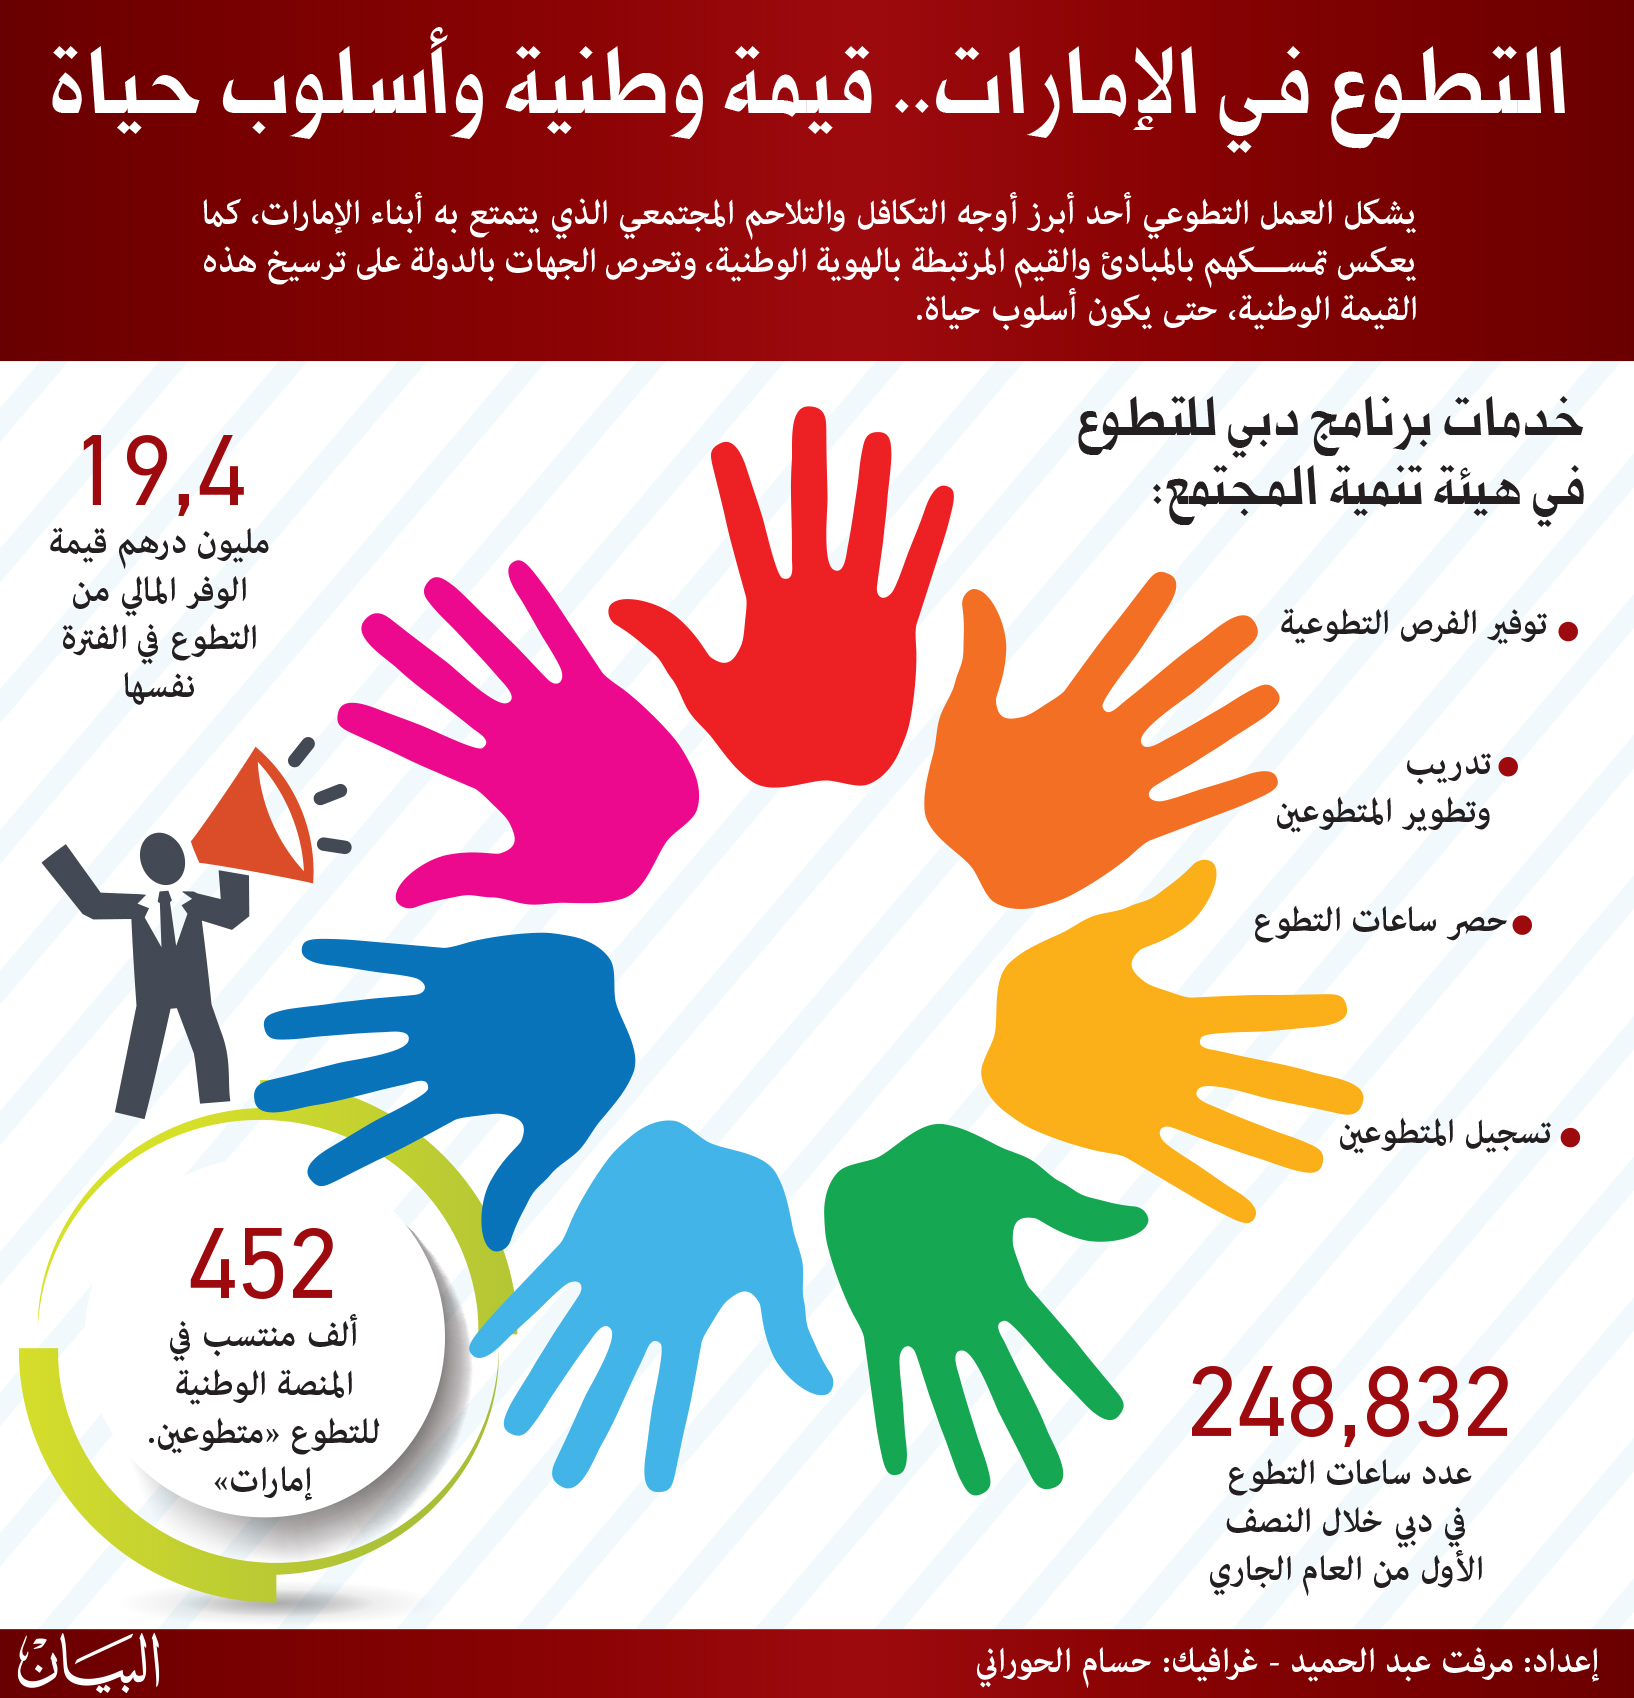 الإمارات تقدم للعالم تجربة زاخرة بإنجازات العمل الإنساني Menafn Com